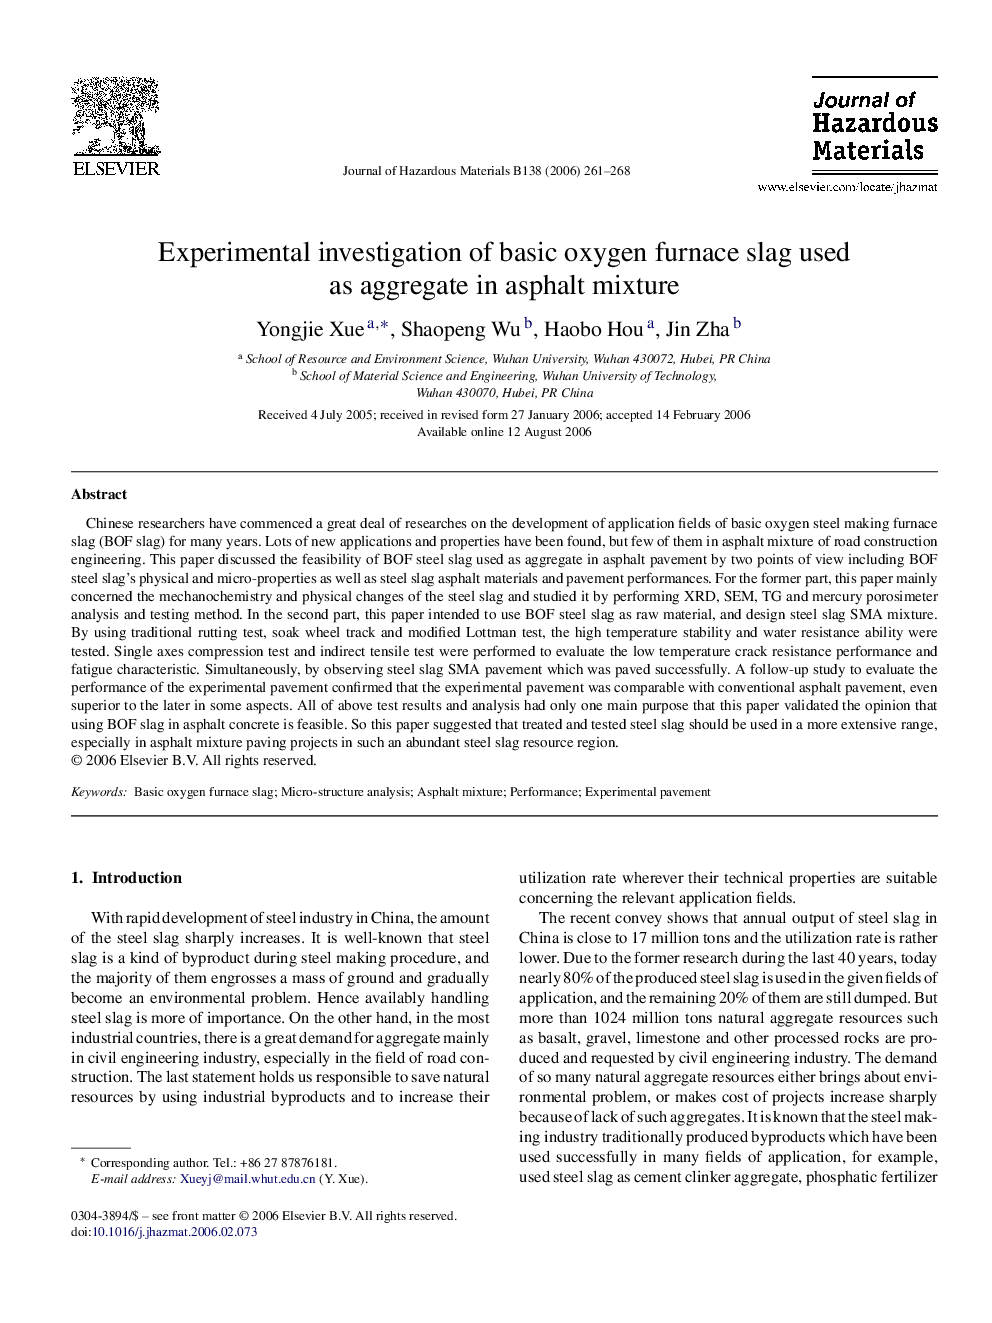 Experimental investigation of basic oxygen furnace slag used as aggregate in asphalt mixture